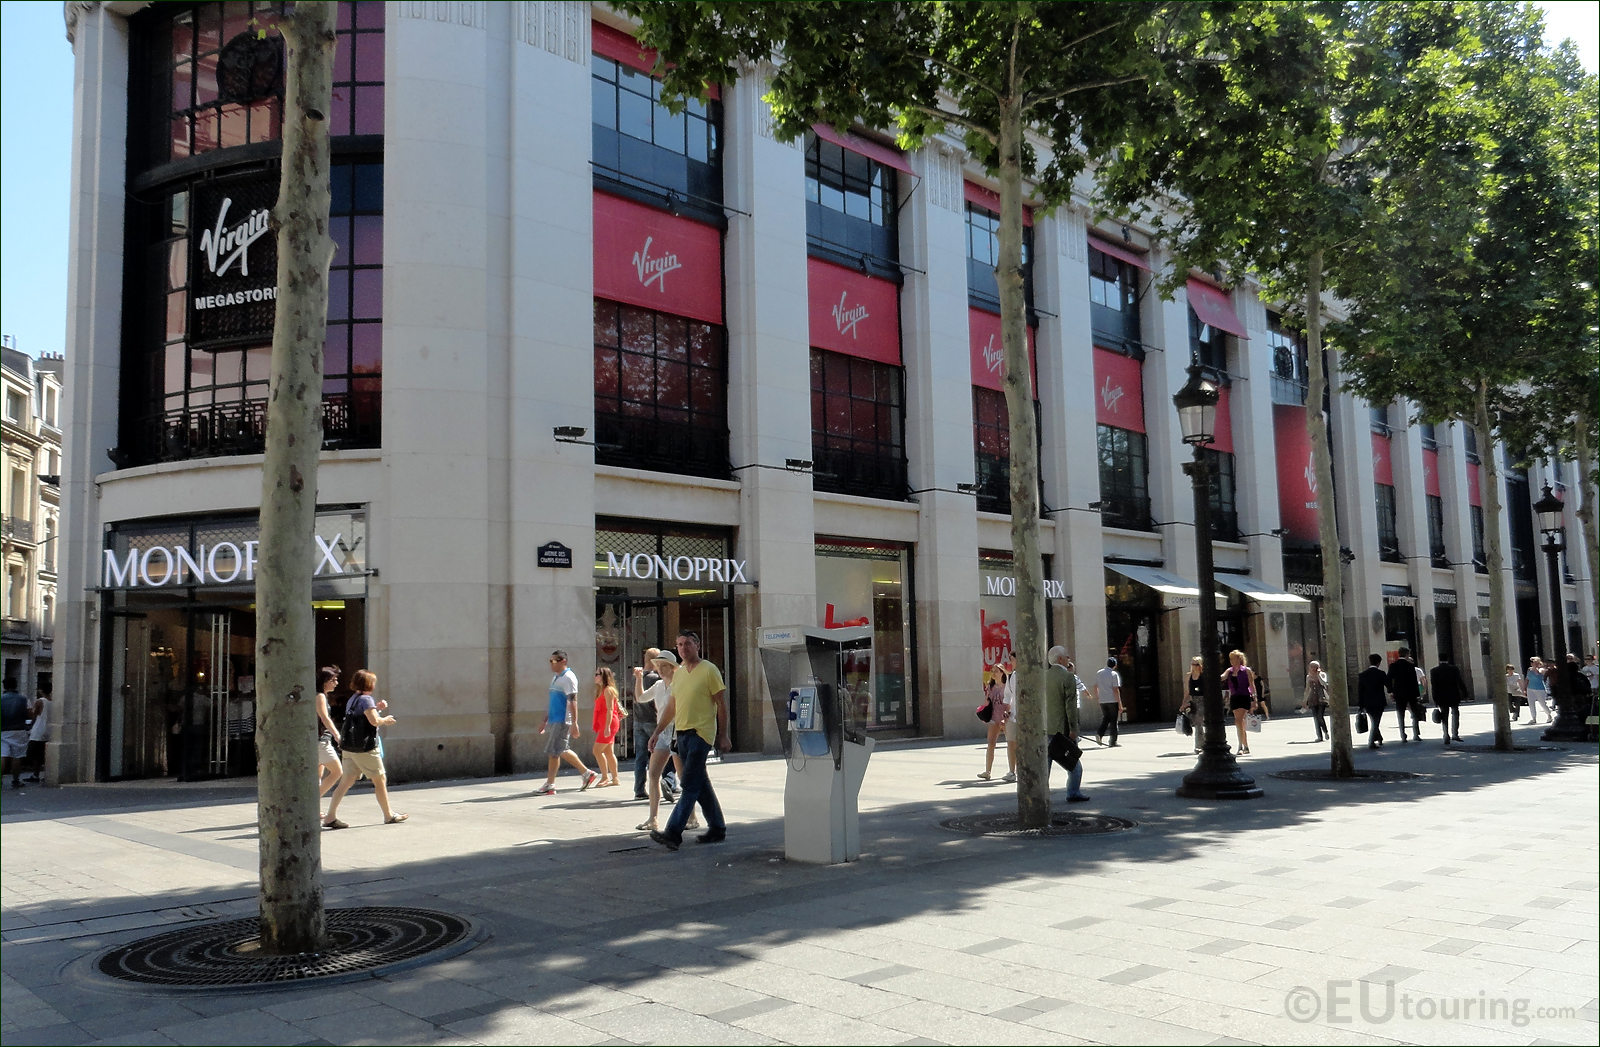 Shopping in the Avenue des Champs-Elysées district - Paris Select